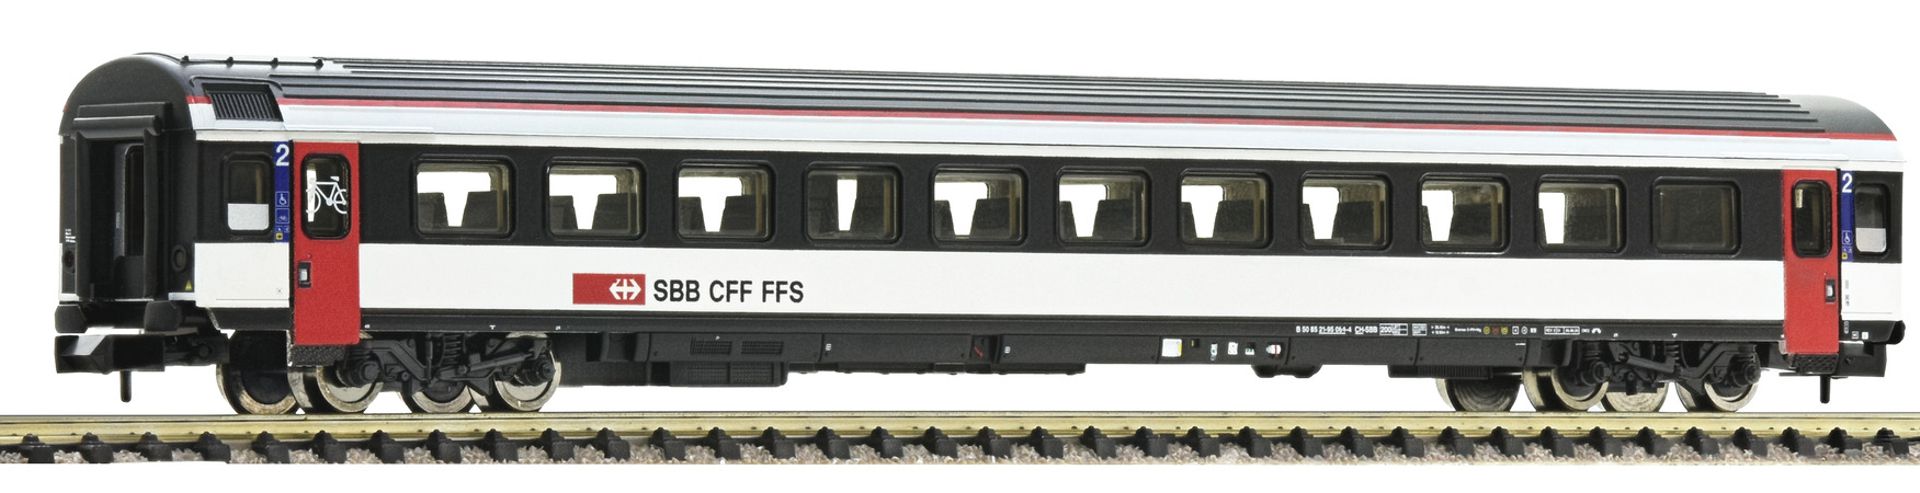 Fleischmann 6260016 - Personenwagen EW-IV, 2. Klasse, SBB, Ep.VI